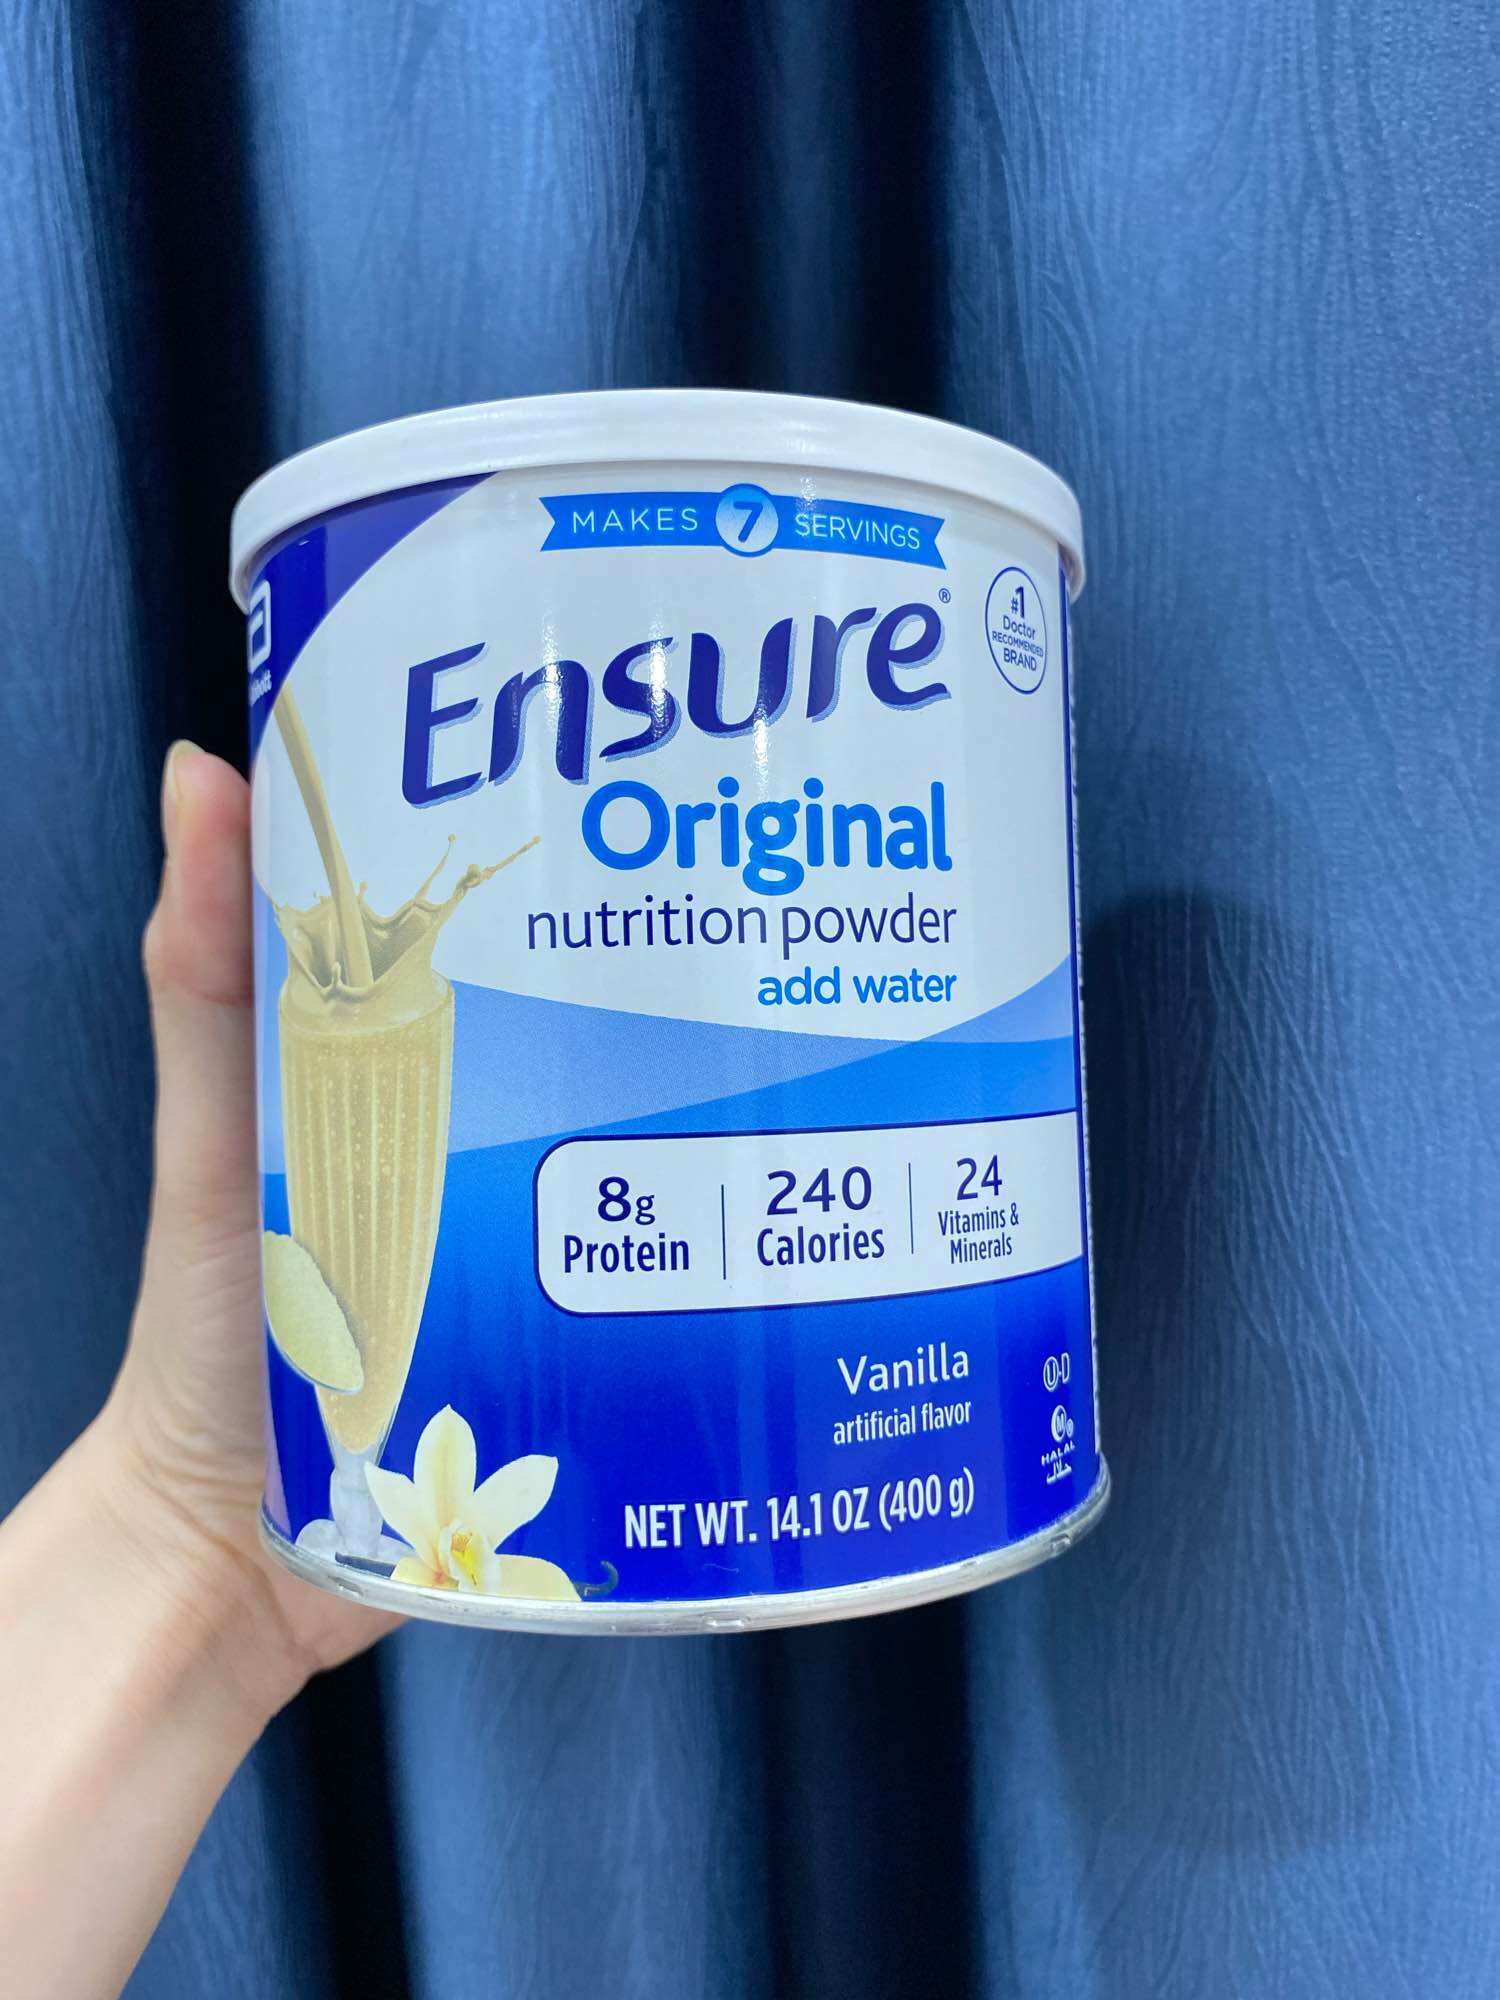 [HÀNG MỸ] Sữa bột Ensure Original Nutrition Powder hương vanilla 400g - mẫu mới